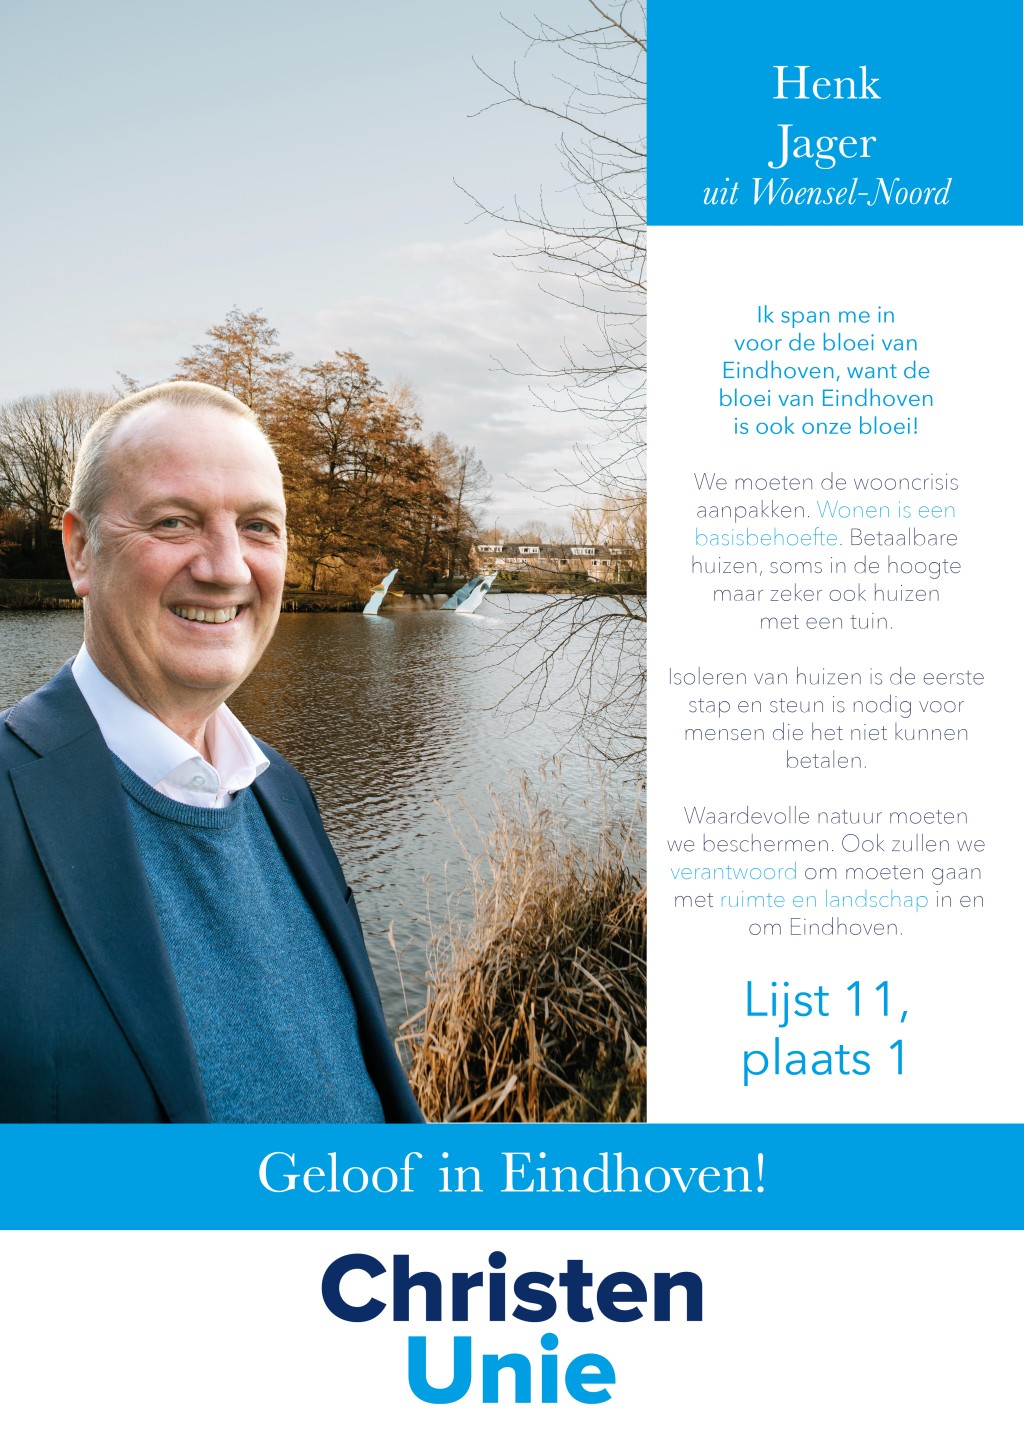 2022 GR22 - Kandidaten Eindhoven3